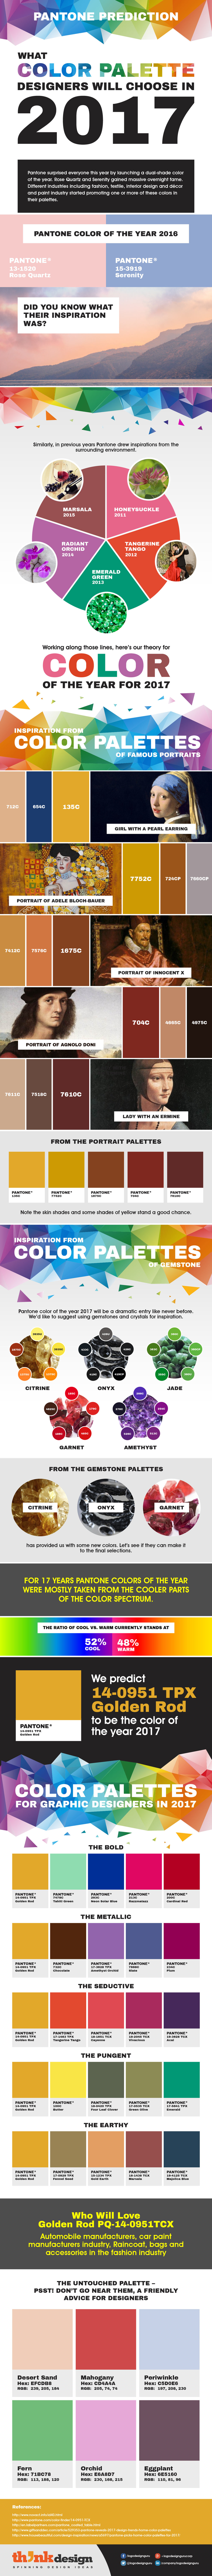 Infographic-pantone-kleuren-2017